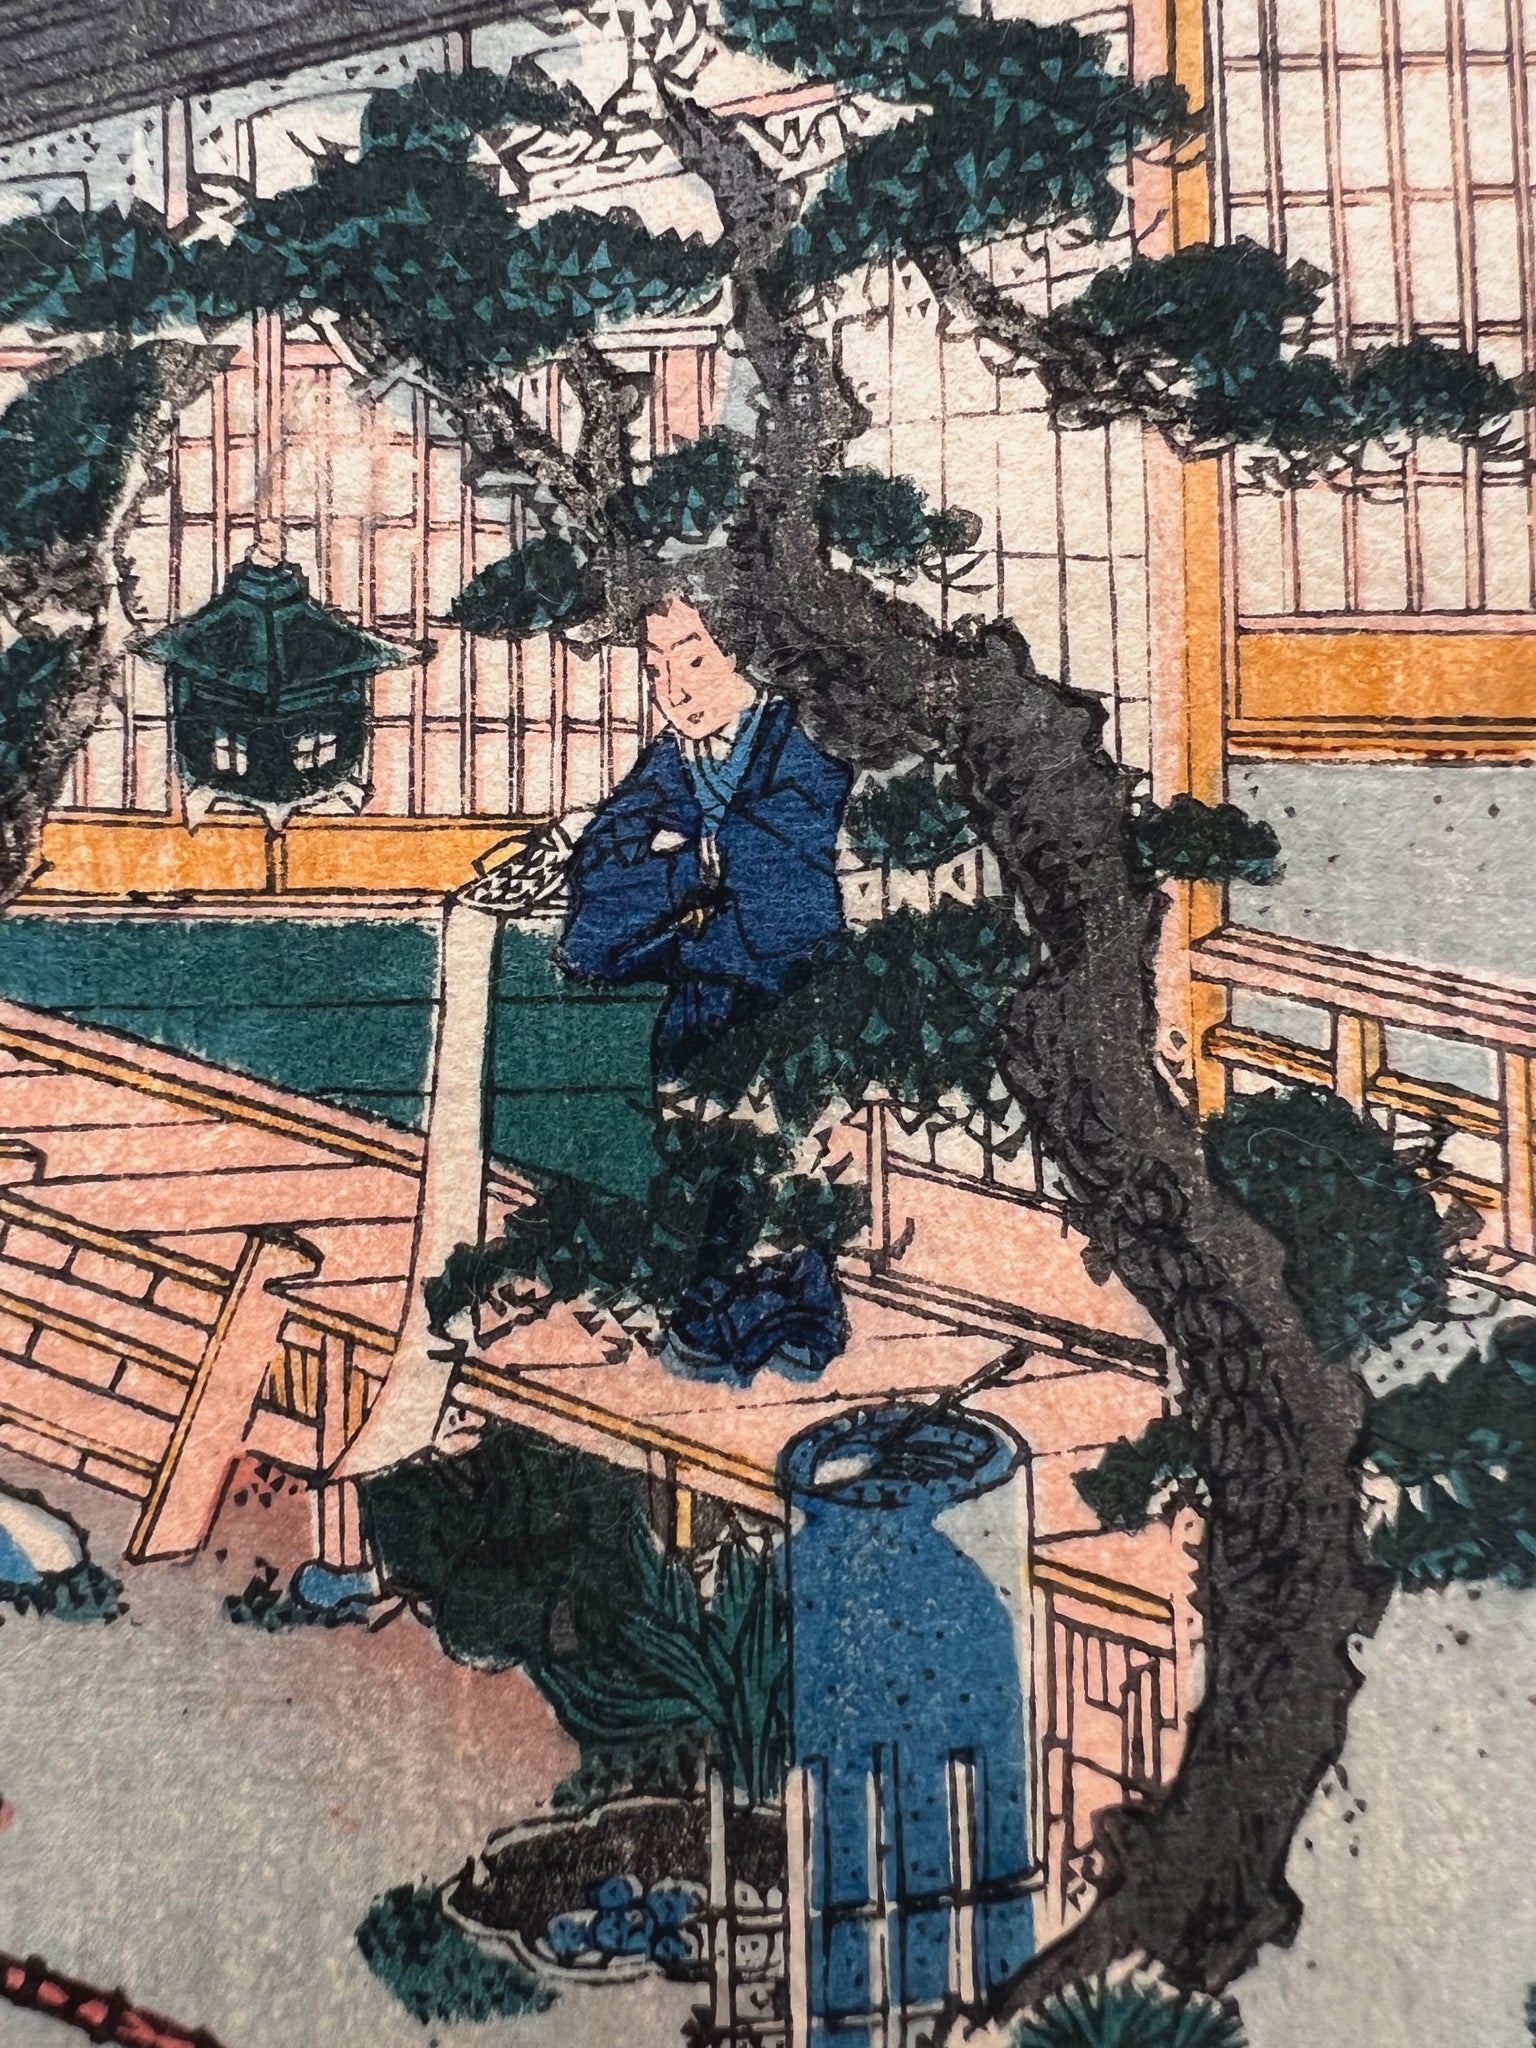 estampe japonaise rencontre discrete de samourai ronin dans la cour intérieure d'une maison de thé, un pin japonais